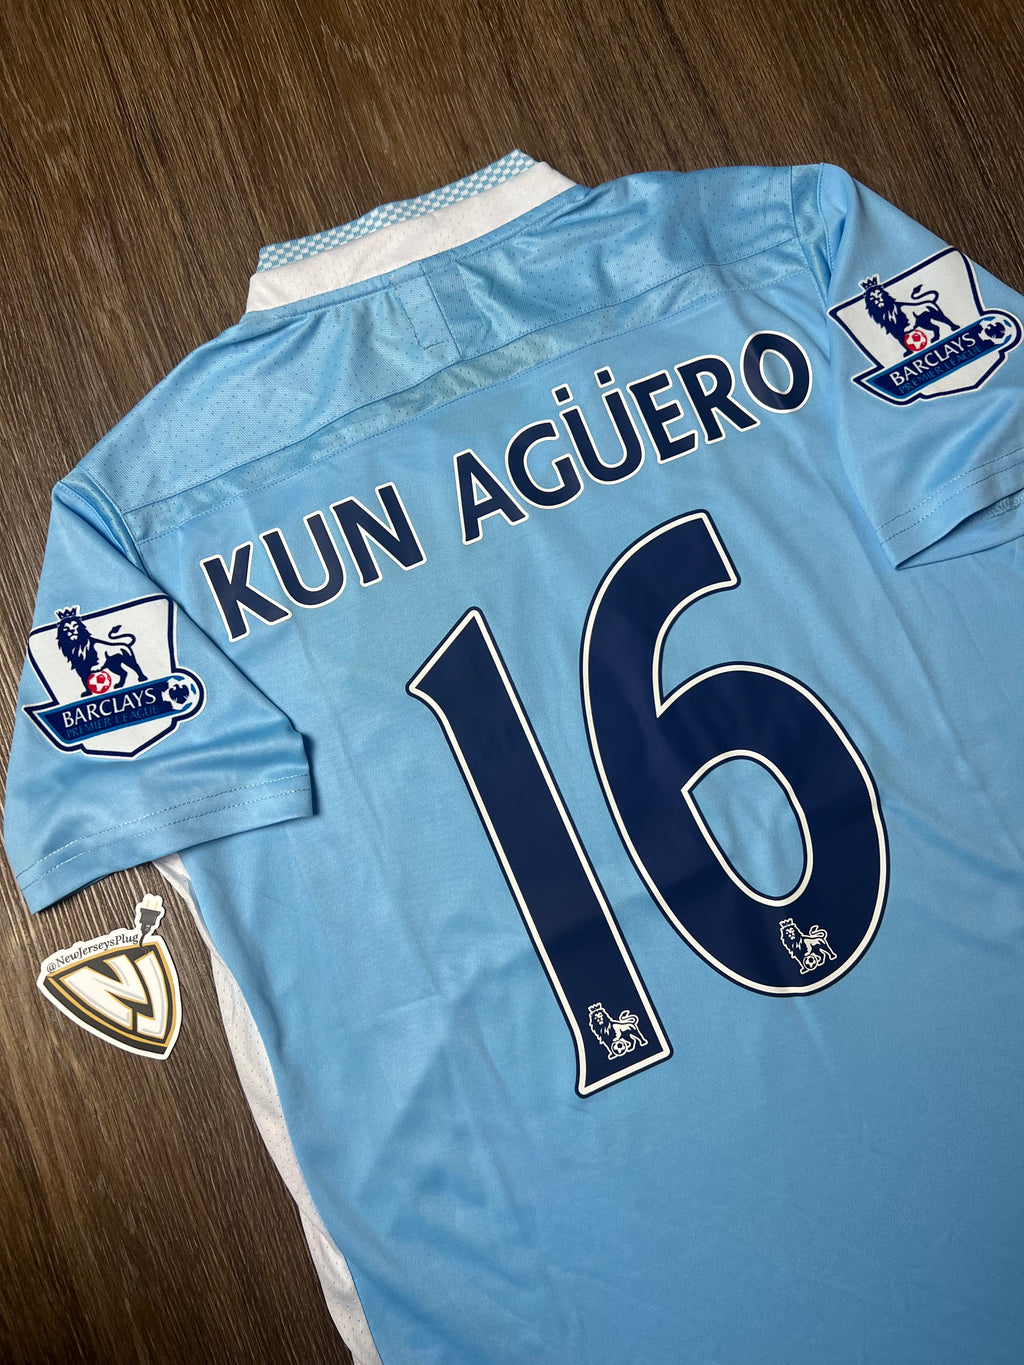 11/12 Manchester City Kun Agüero Home Jersey